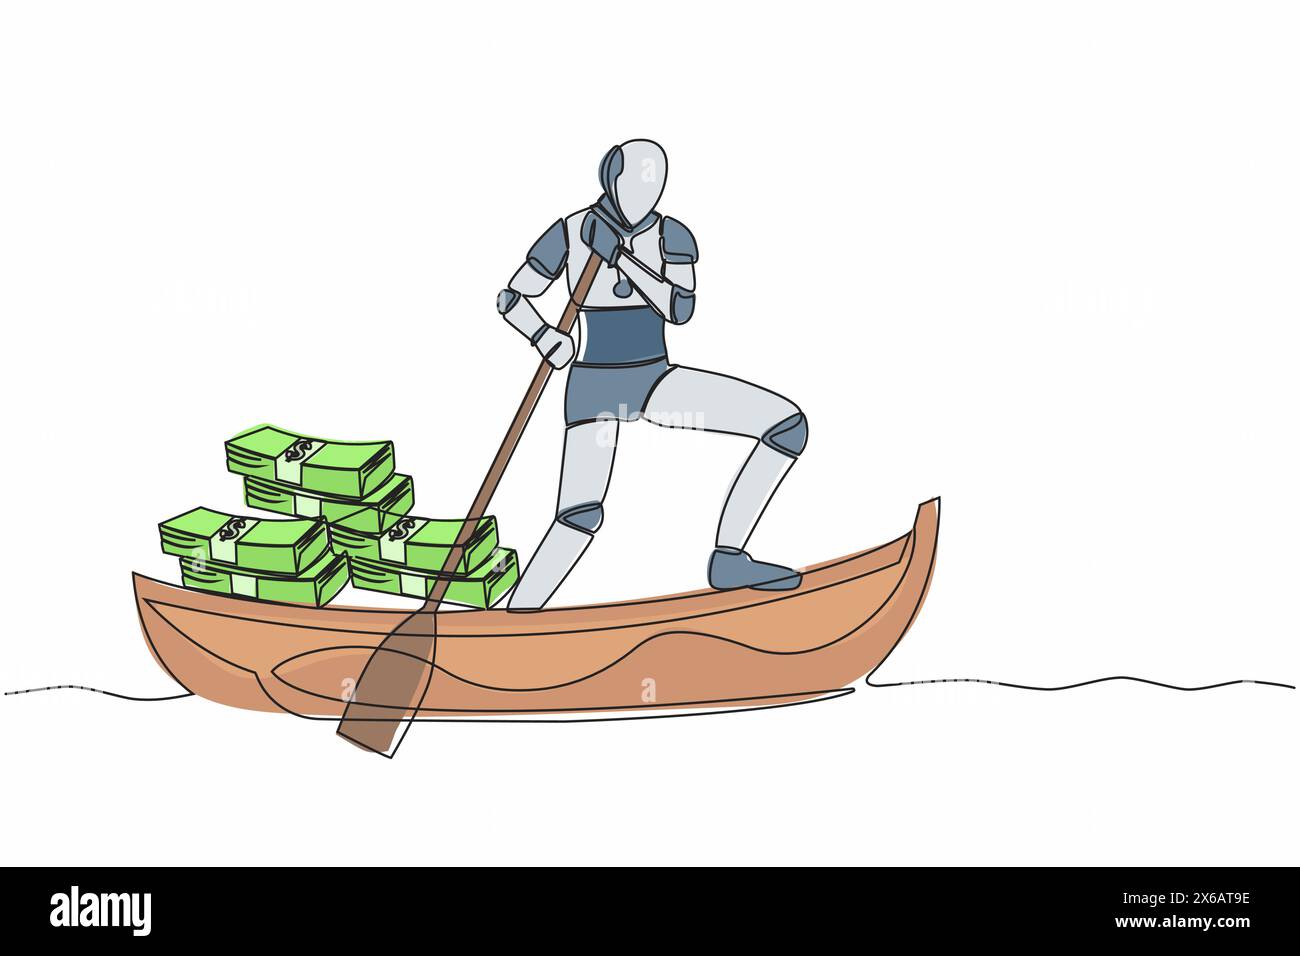 Ein einziger Zeichnungs-Roboter, der mit einem Banknotenstapel auf dem Boot wegsegelt. Digitale Finanzkriminalität oder Geldwäsche. Roboterkünstliche Intelligenz Stock Vektor